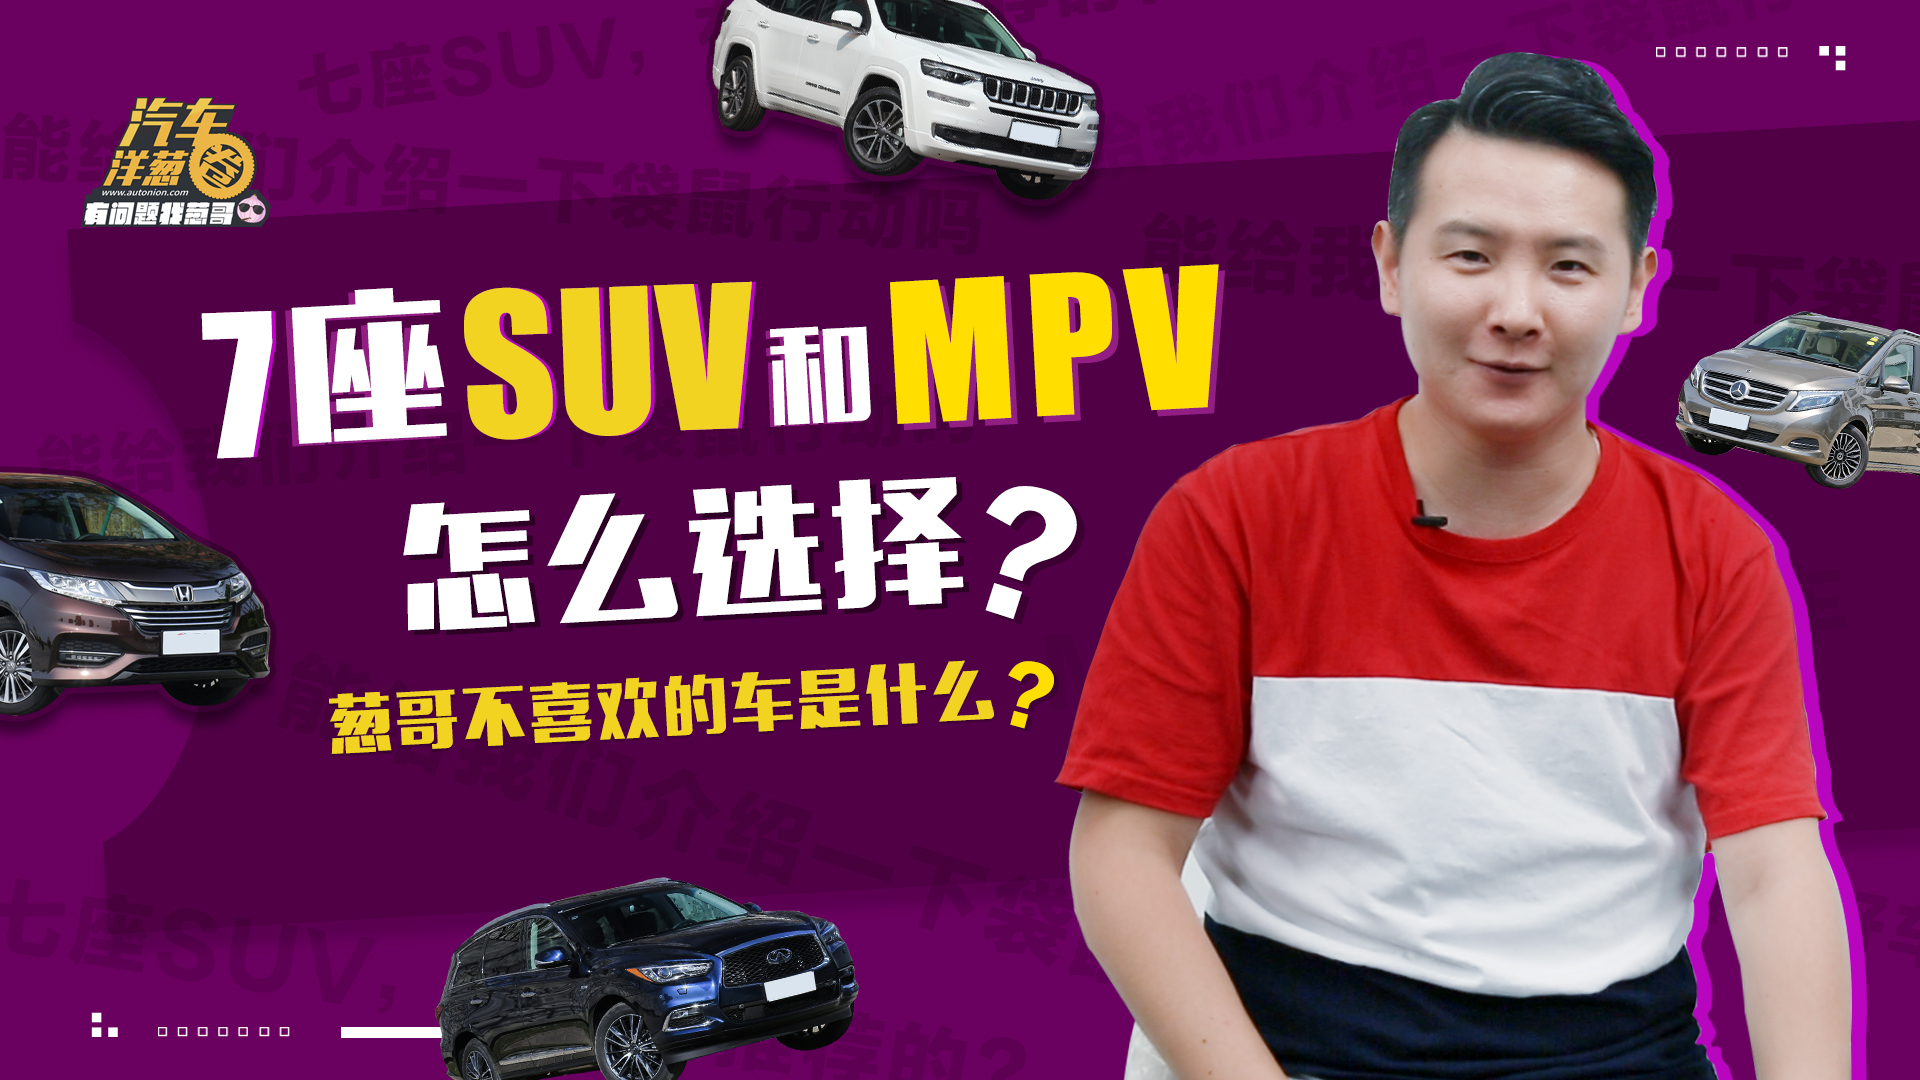 7座SUV和MPV该如何选择？政府拍卖的公车能买吗？